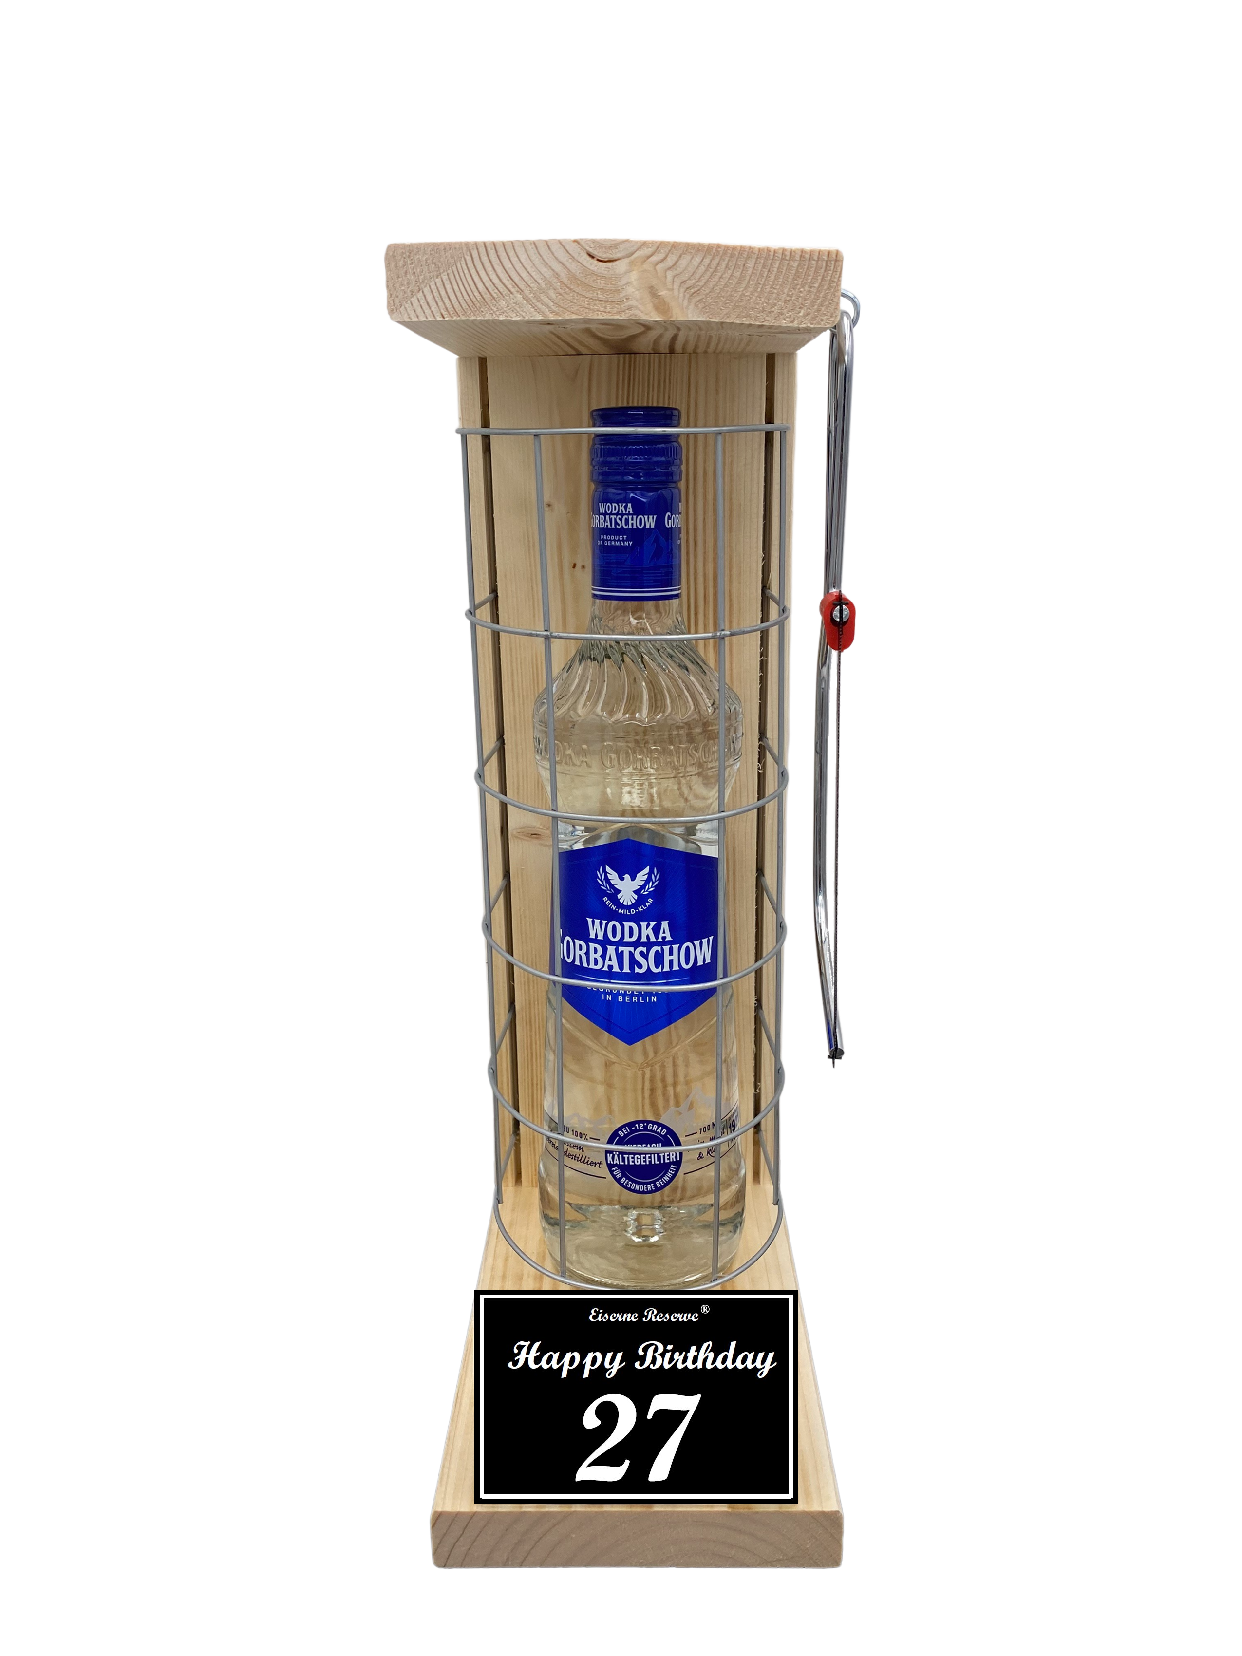 Wodka Geschenk zum 27 Geburtstag - Eiserne Reserve Gitterkäfig